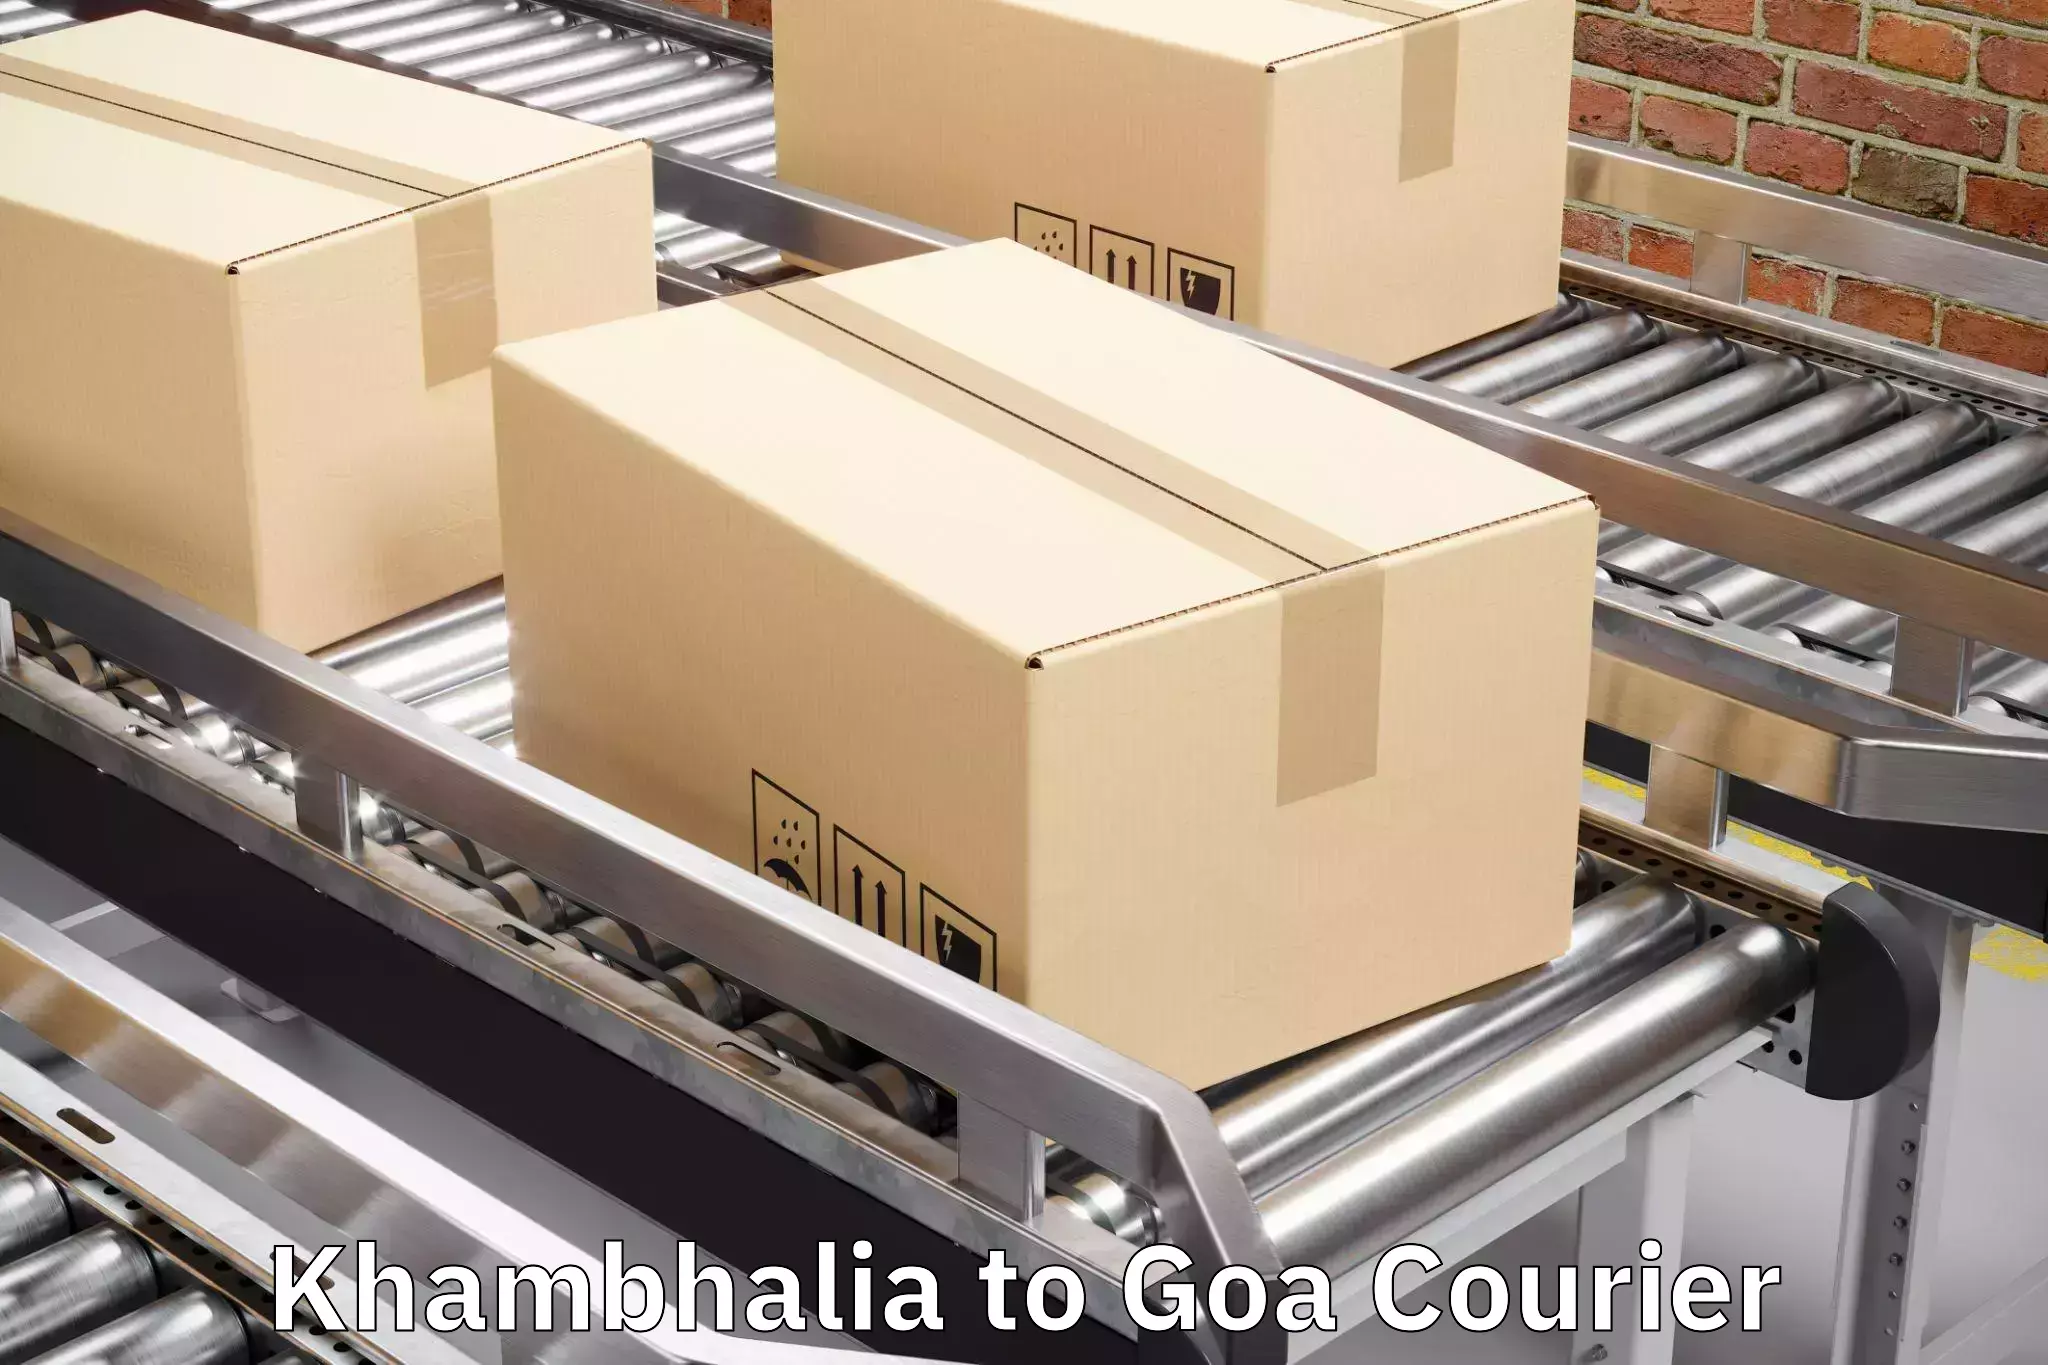 Baggage transport technology Khambhalia to South Goa